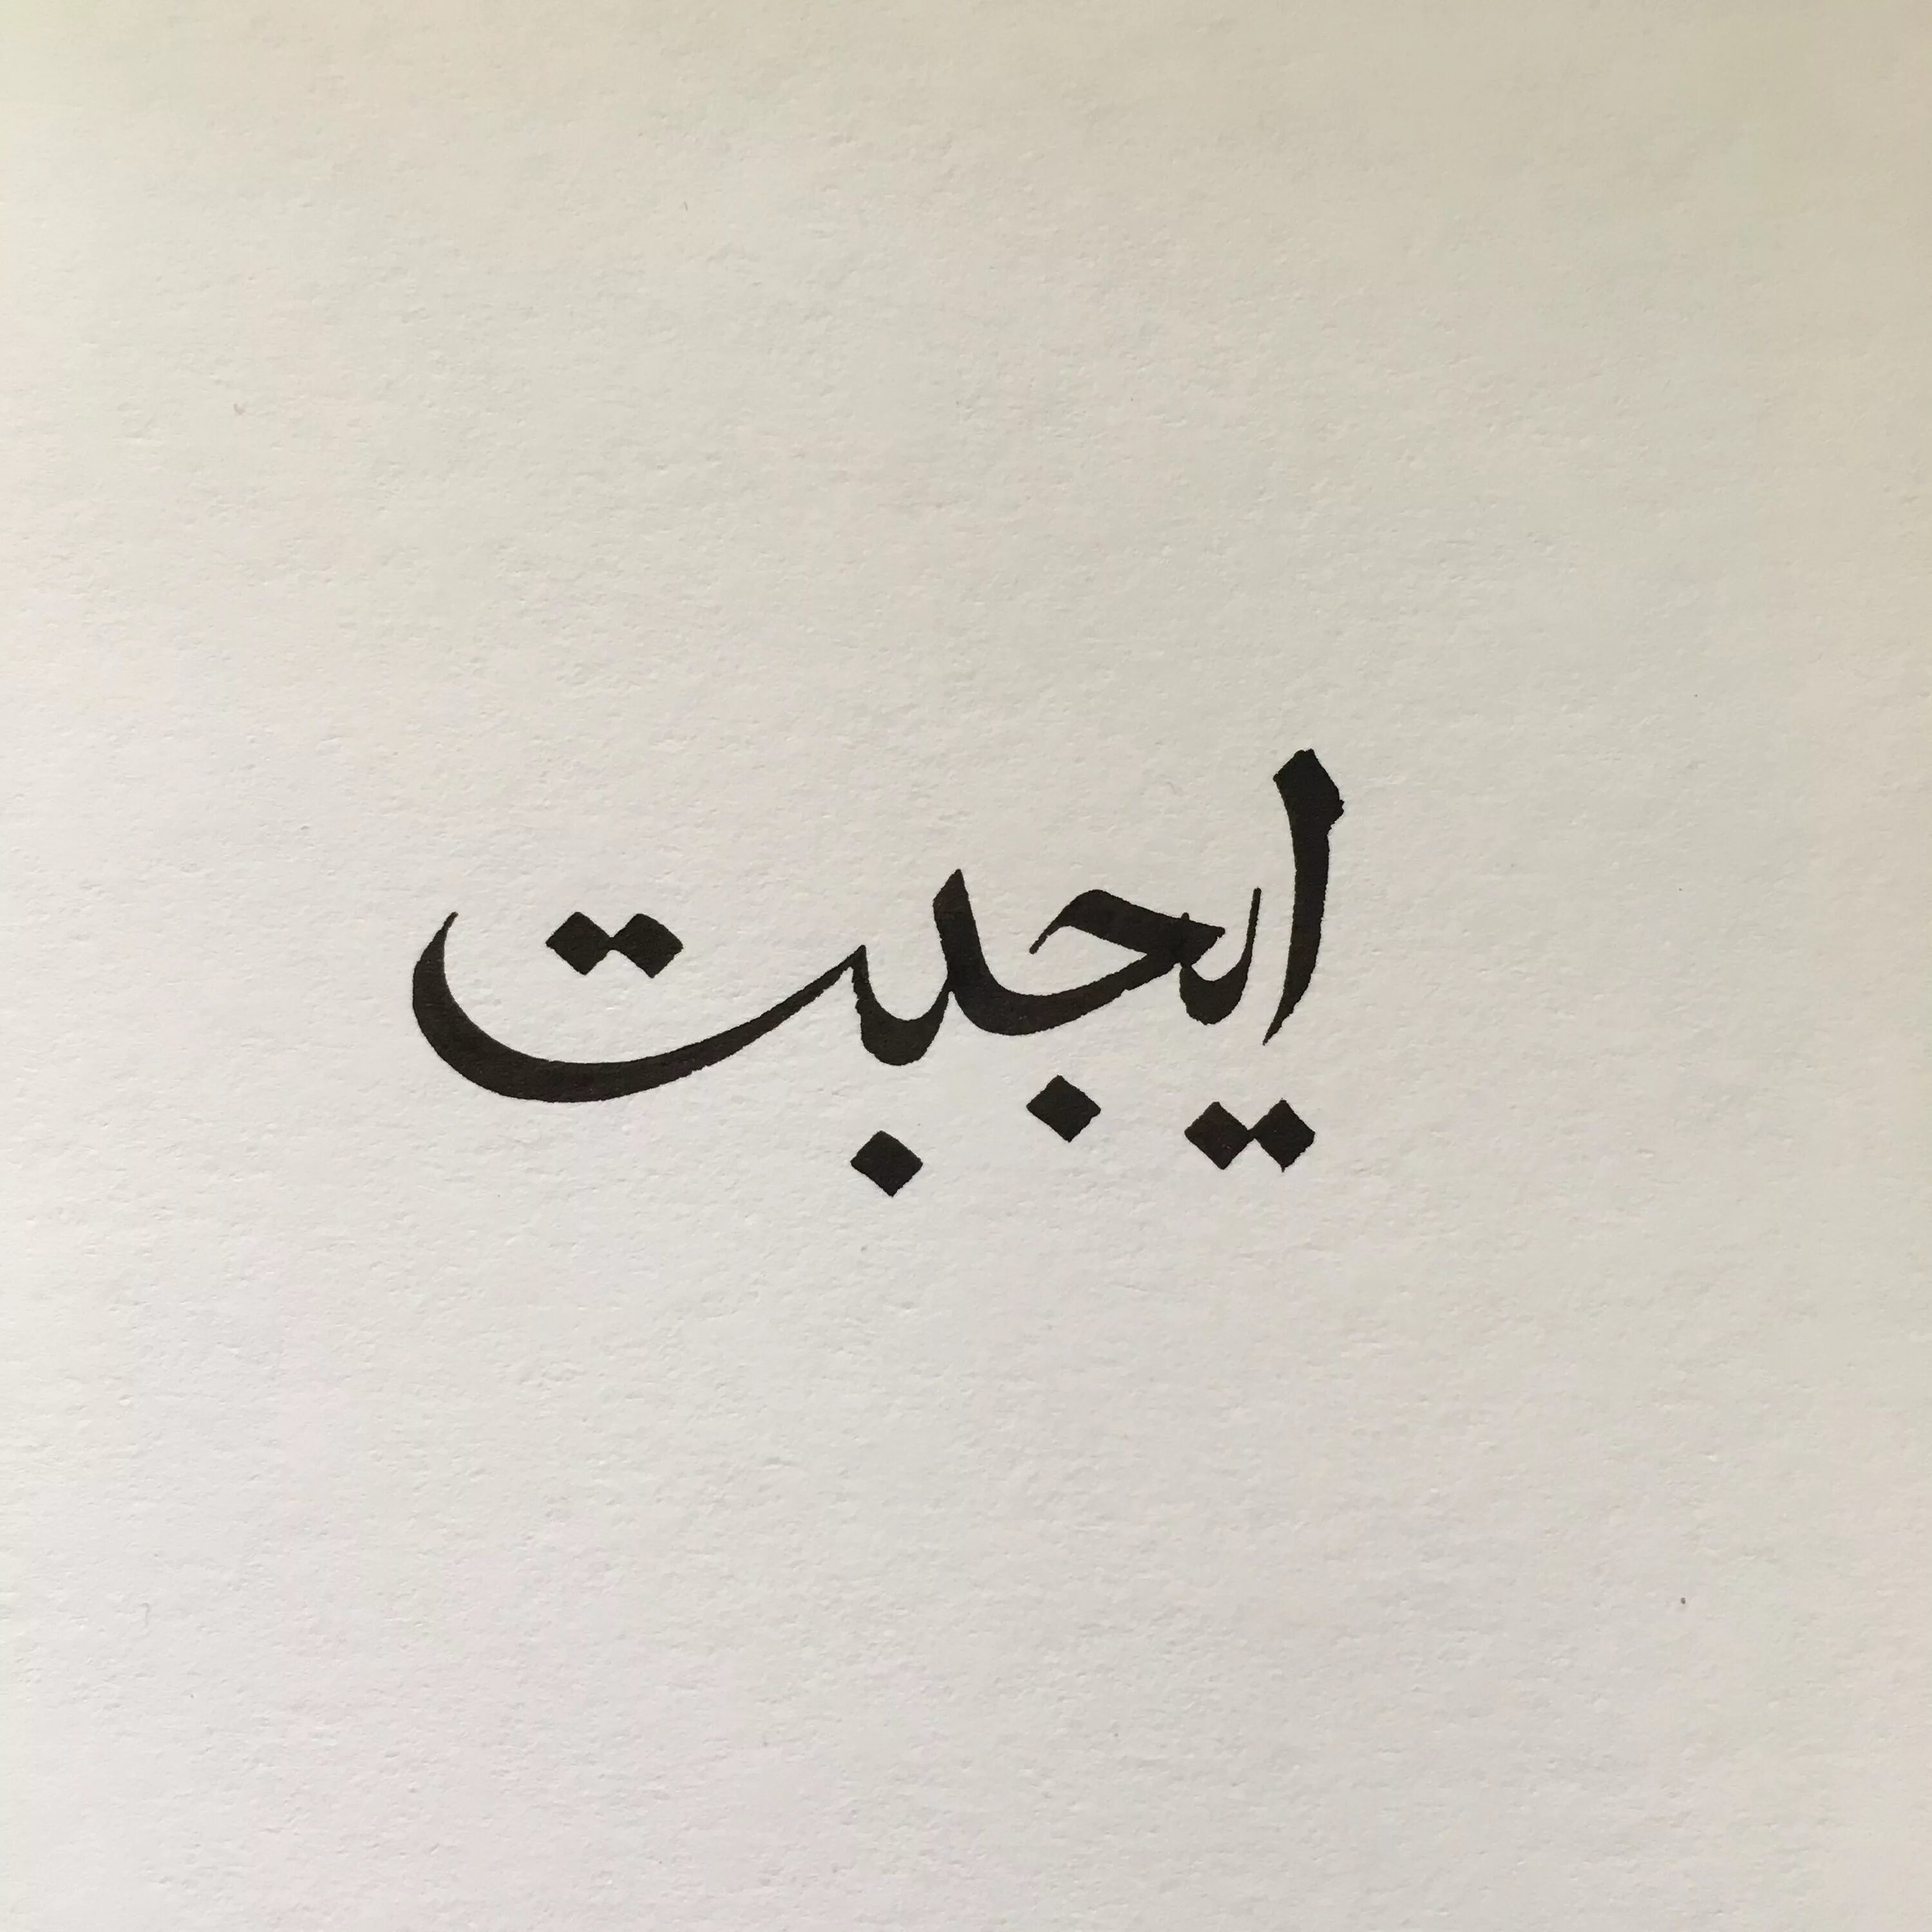 Как будет на арабском спасибо. Любовь на арабском. Арабские надписи. Арабские иероглифы. Арабские рисунки.